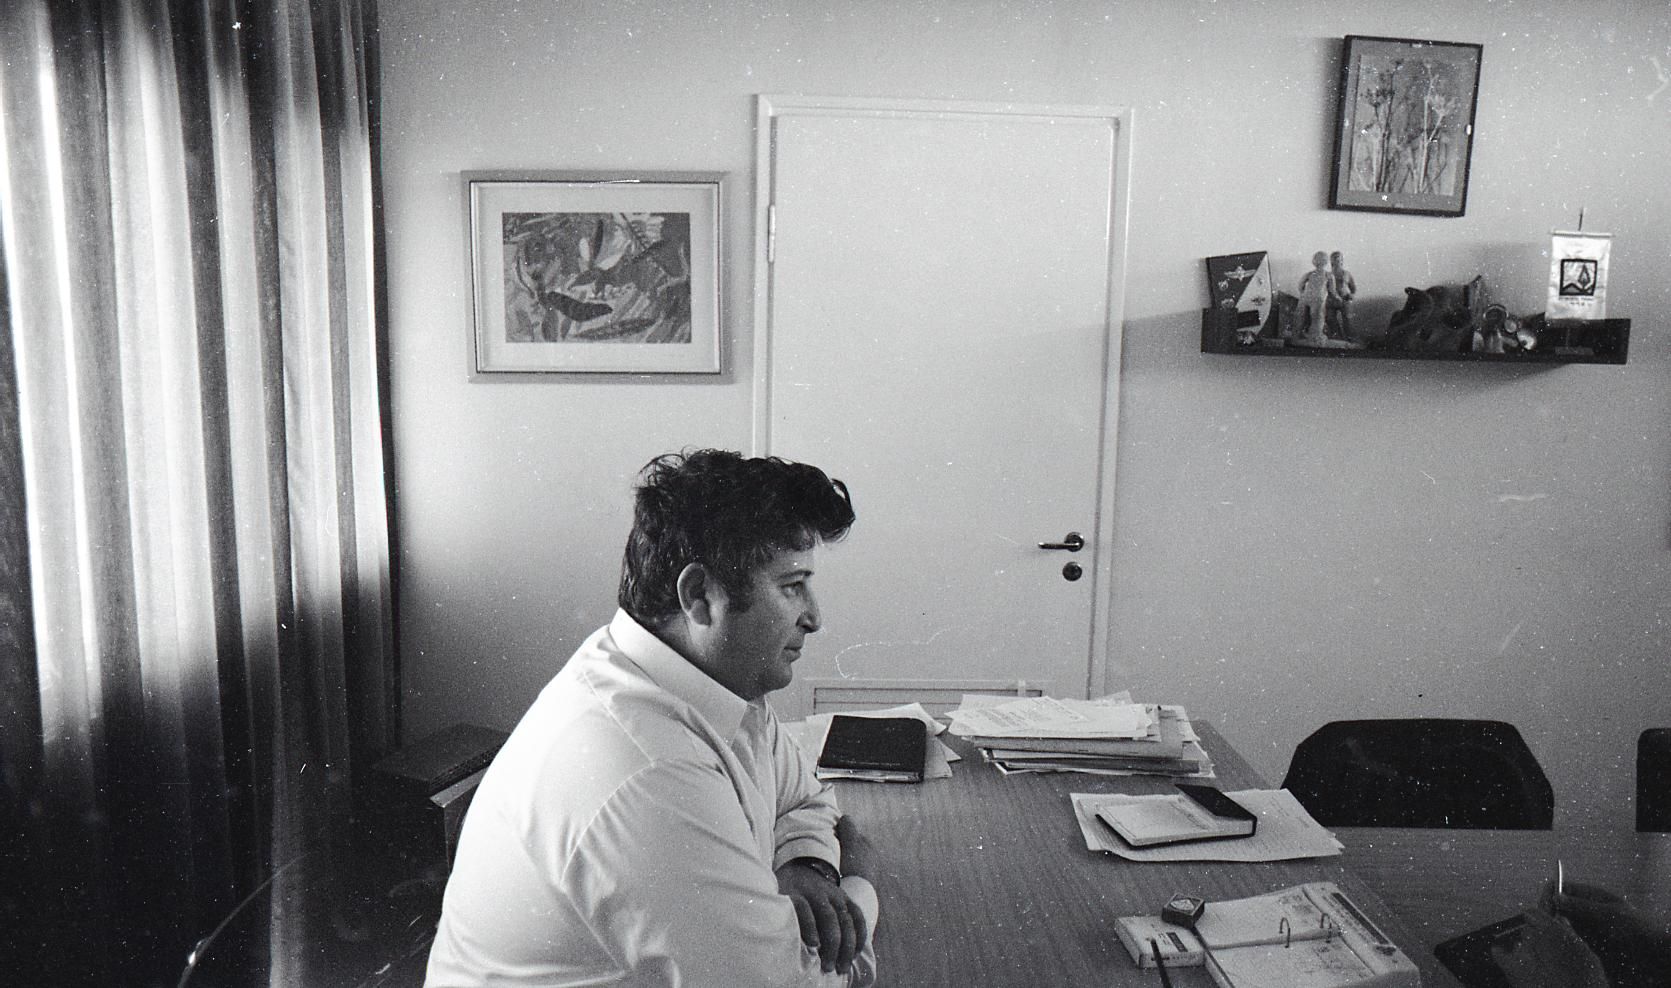 אברהם בייגה שוחט במשרדו בערב, 15 בפברואר 1973 (צילום: הספרייה הלאומית, ארכיון עליזה אורבך)